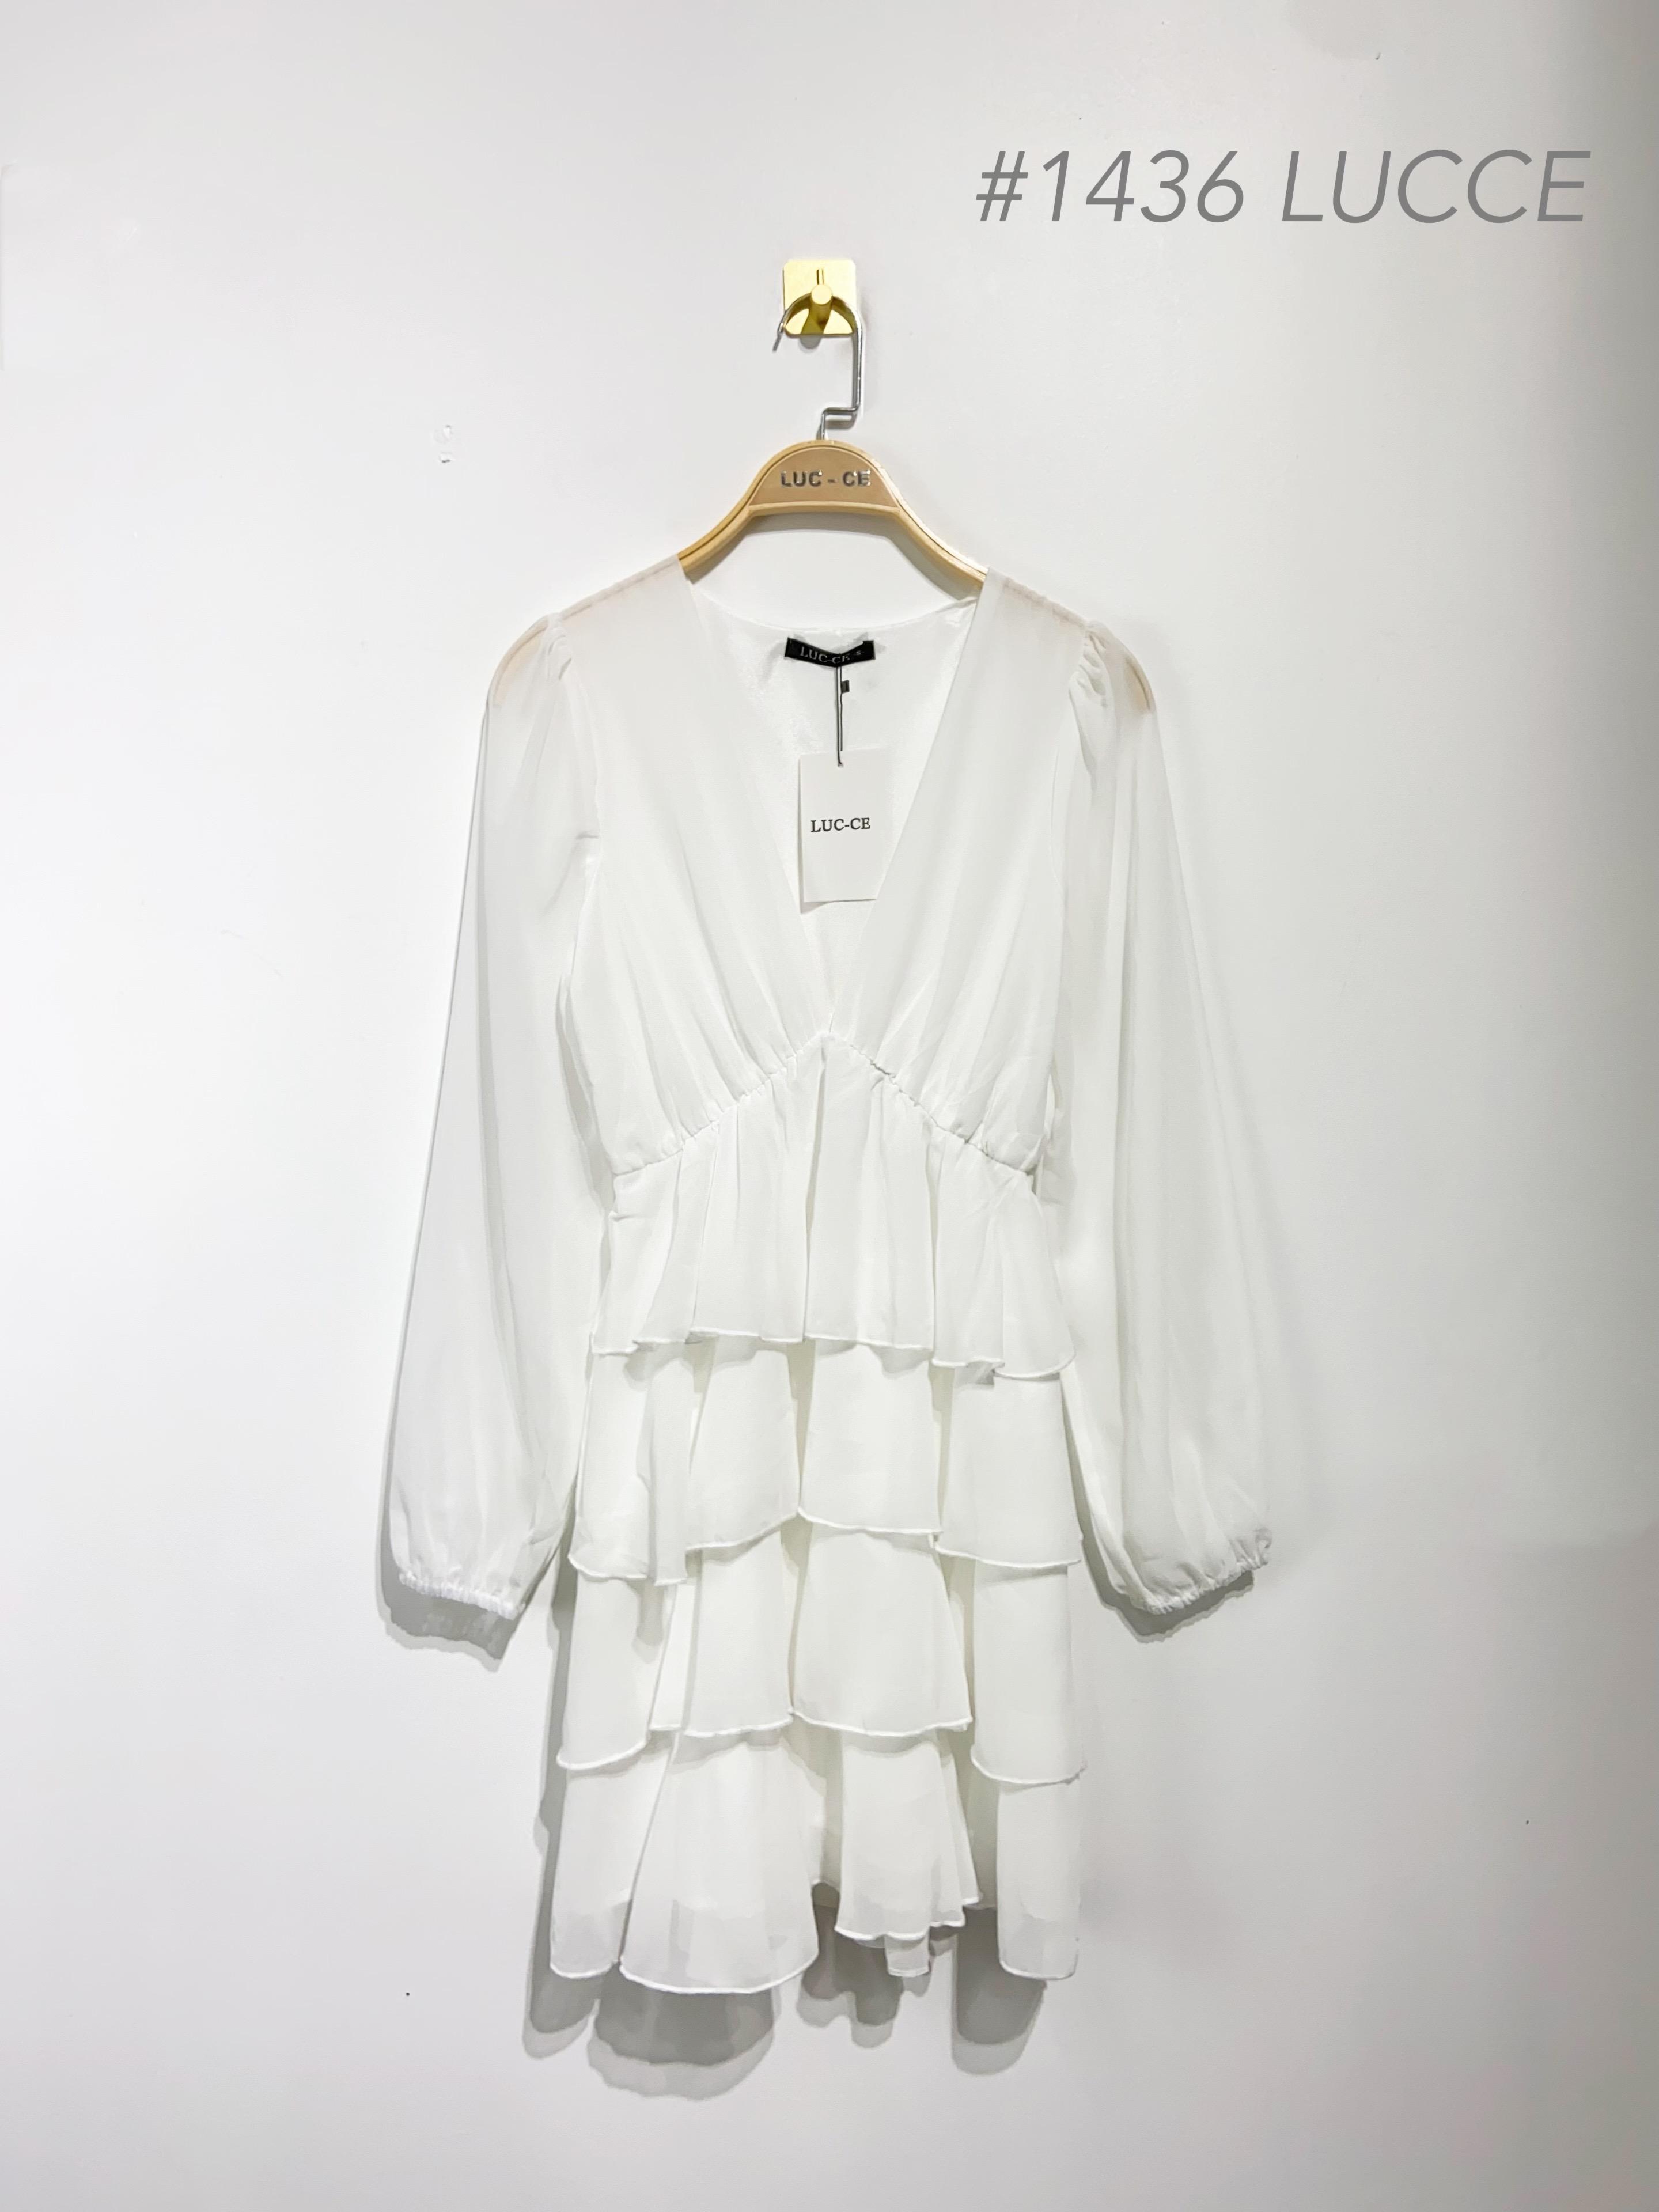 Robes courtes Femme Blanc Luc-ce 1436 #c Efashion Paris